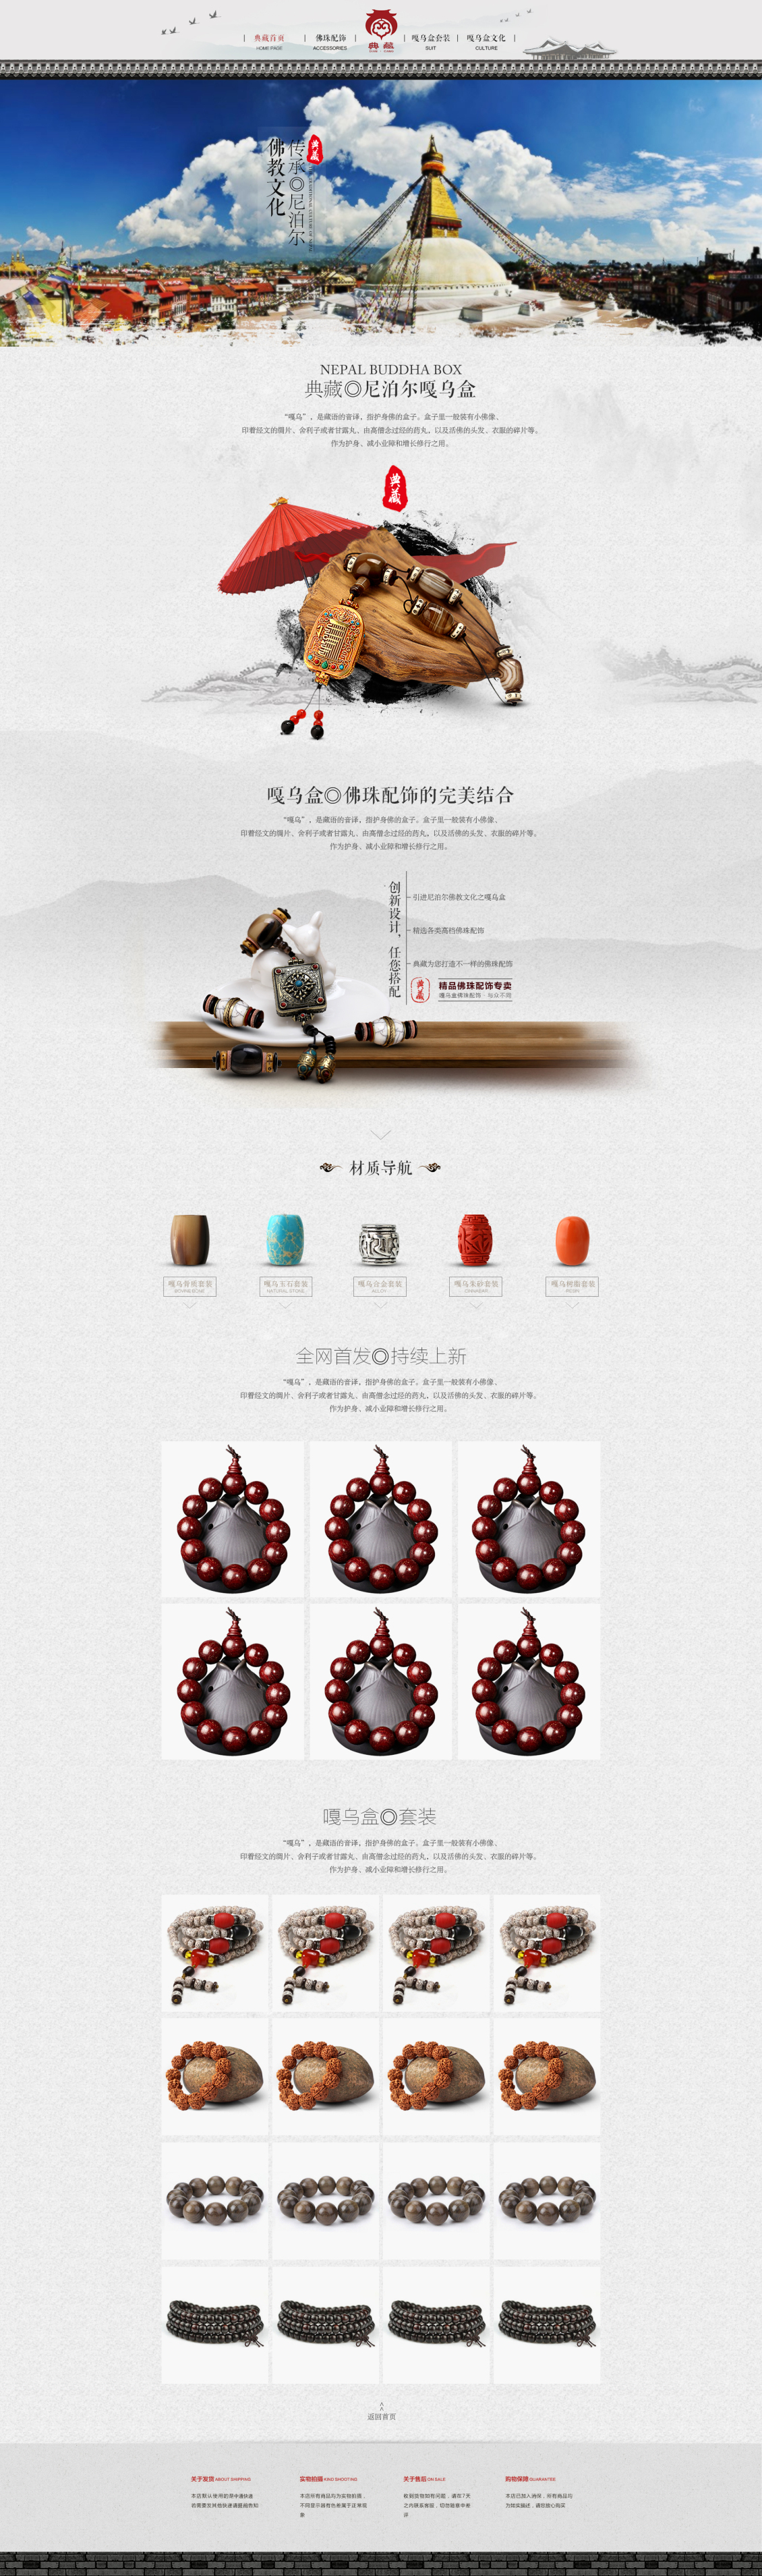 淘宝美工y16949首页珠宝手表藏族风佛珠手链项链作品